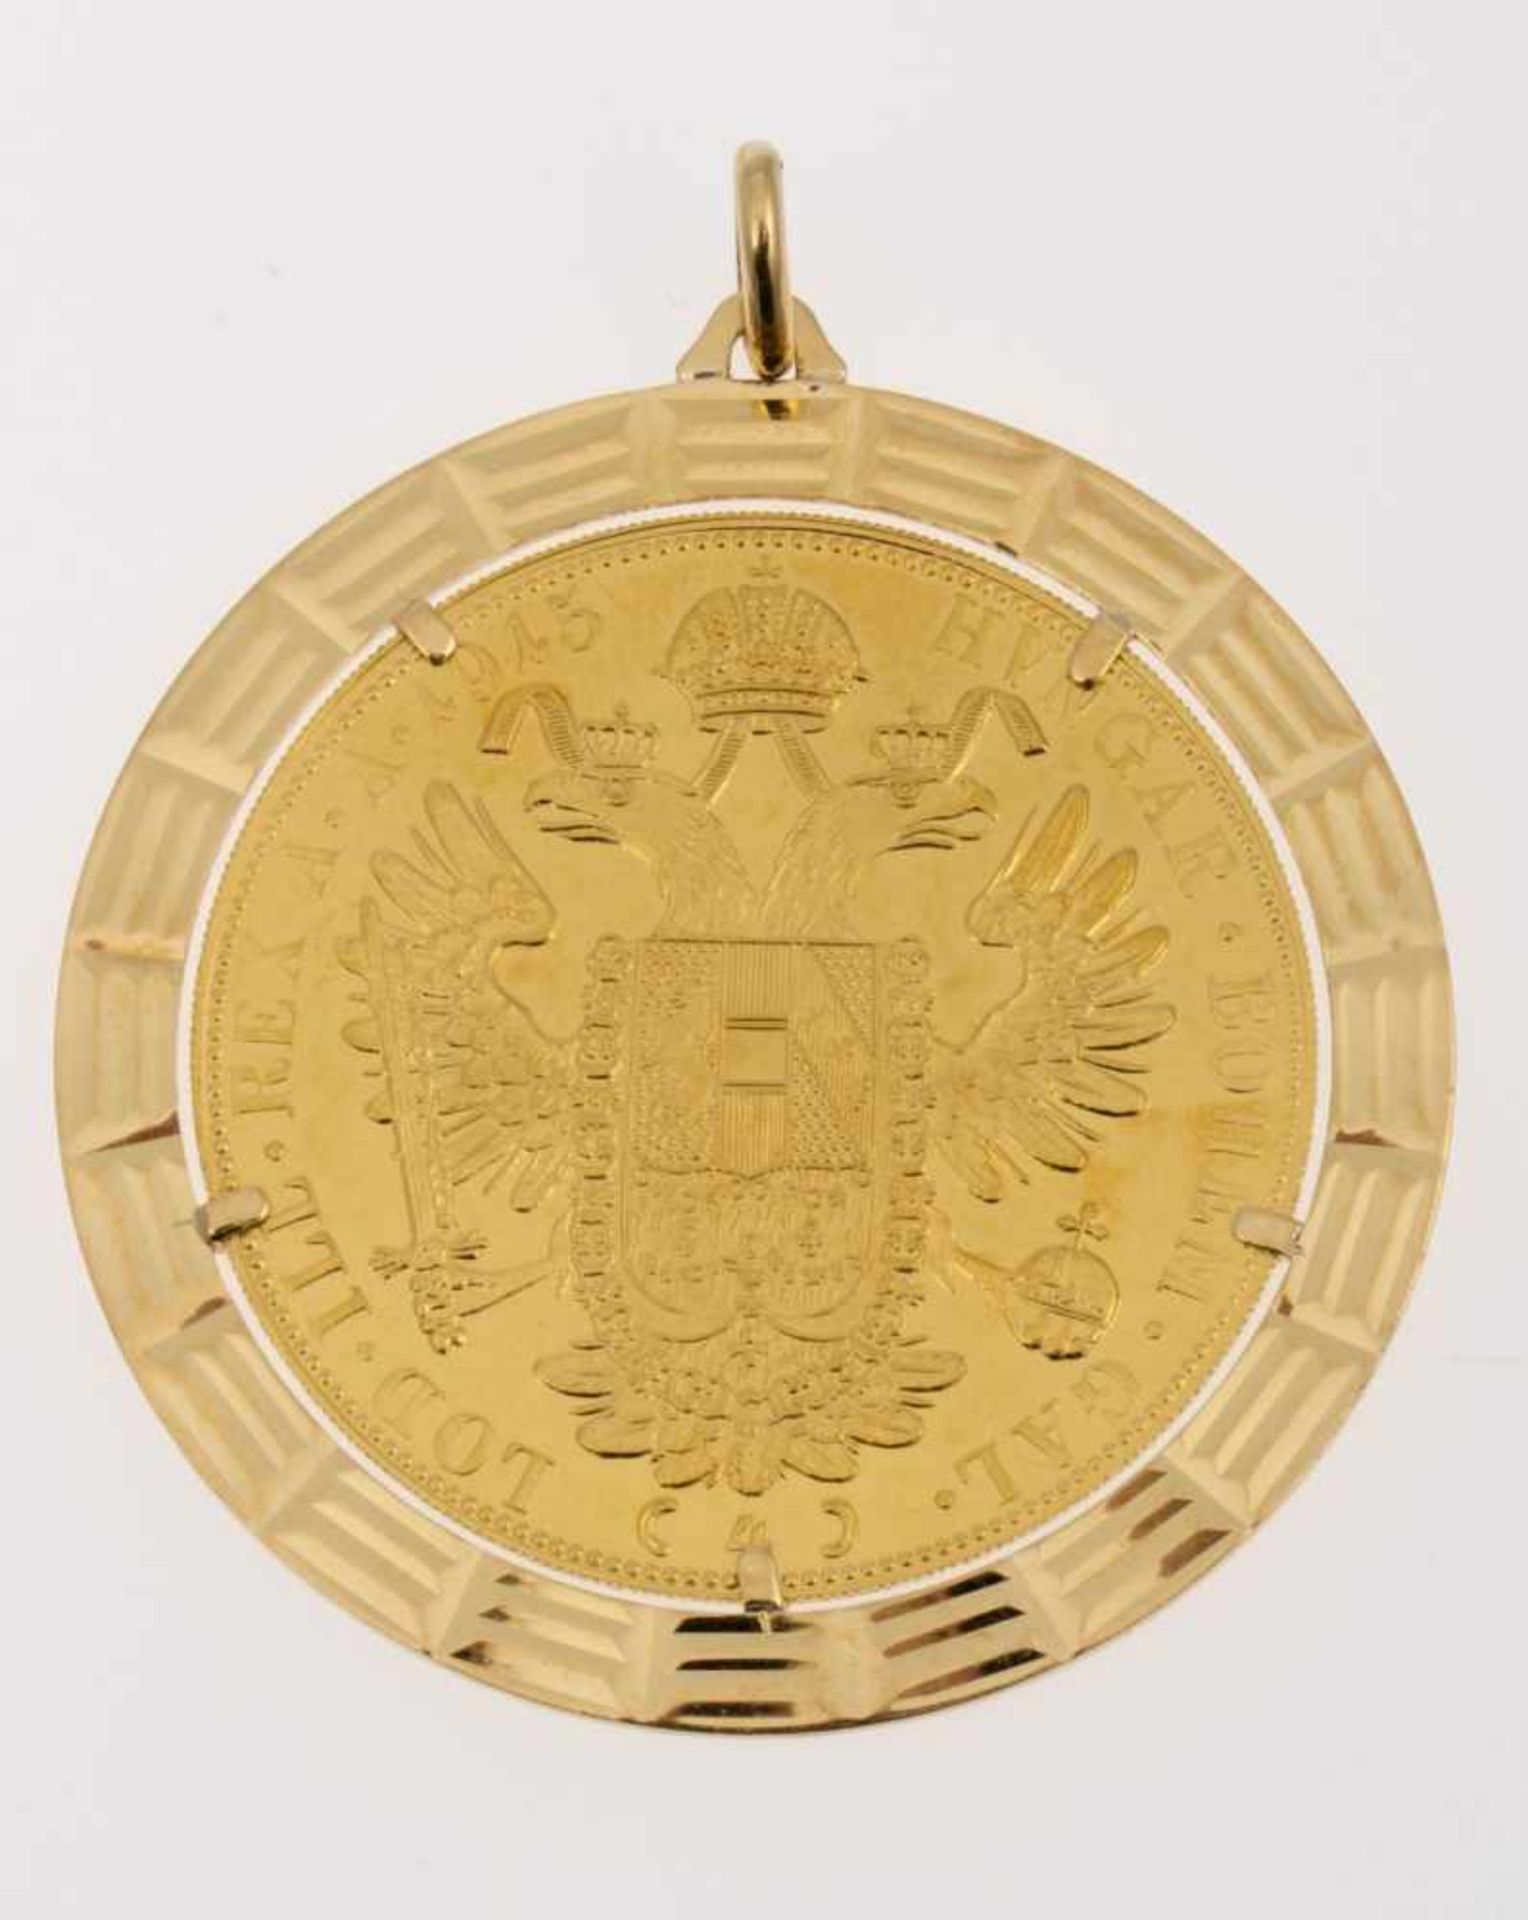 Großer MünzanhängerGelbgold 750 bzw. 986. Münze Österreich-Ungarn 4 Dukaten 1915 Franz Josef I. D. - Bild 2 aus 2